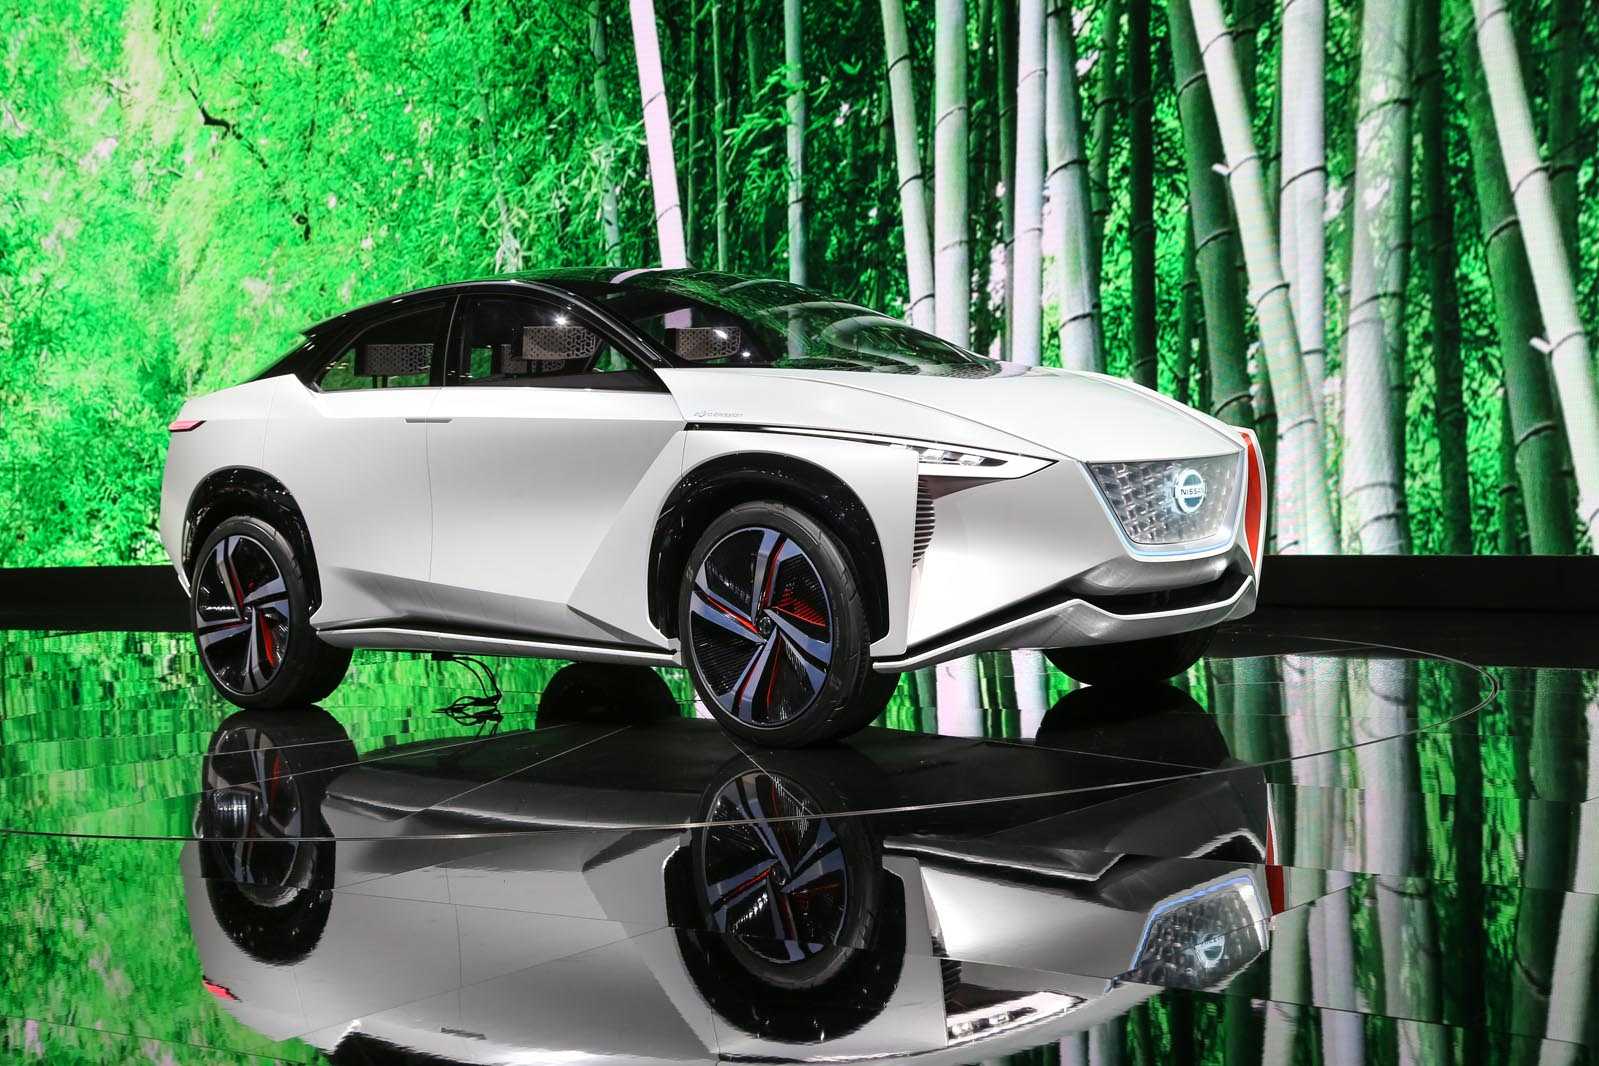 Nissan объявляет о наступлении новой эры дизайна и динамичности, представляя два электромобиля на автосалоне в токио